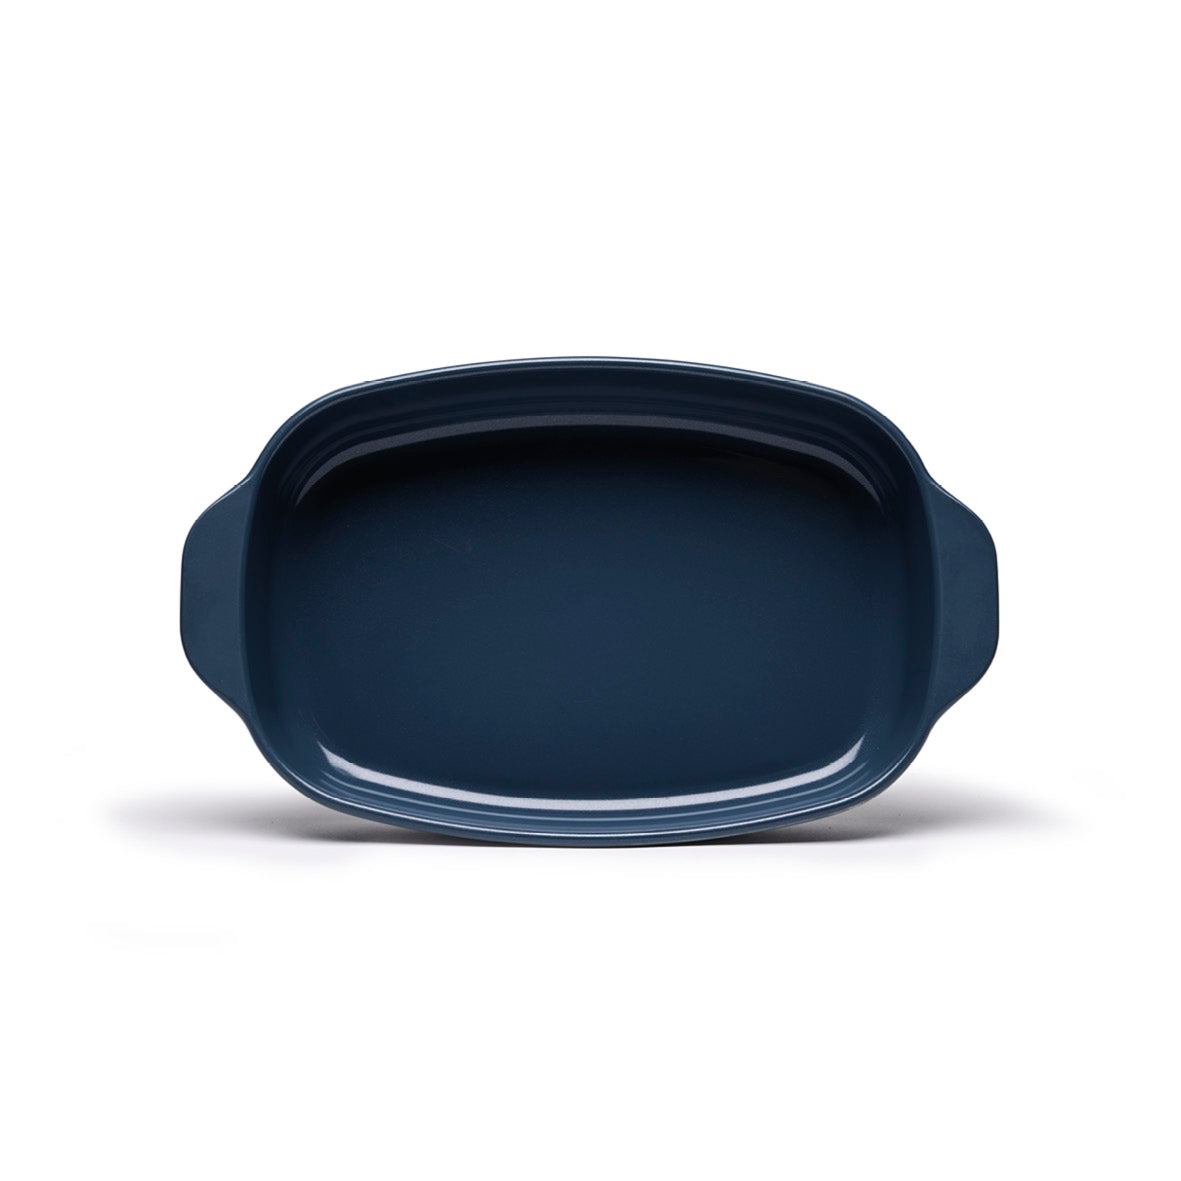 Plat à four en céramique bleu-réactif avec poignée (rond) – soñho